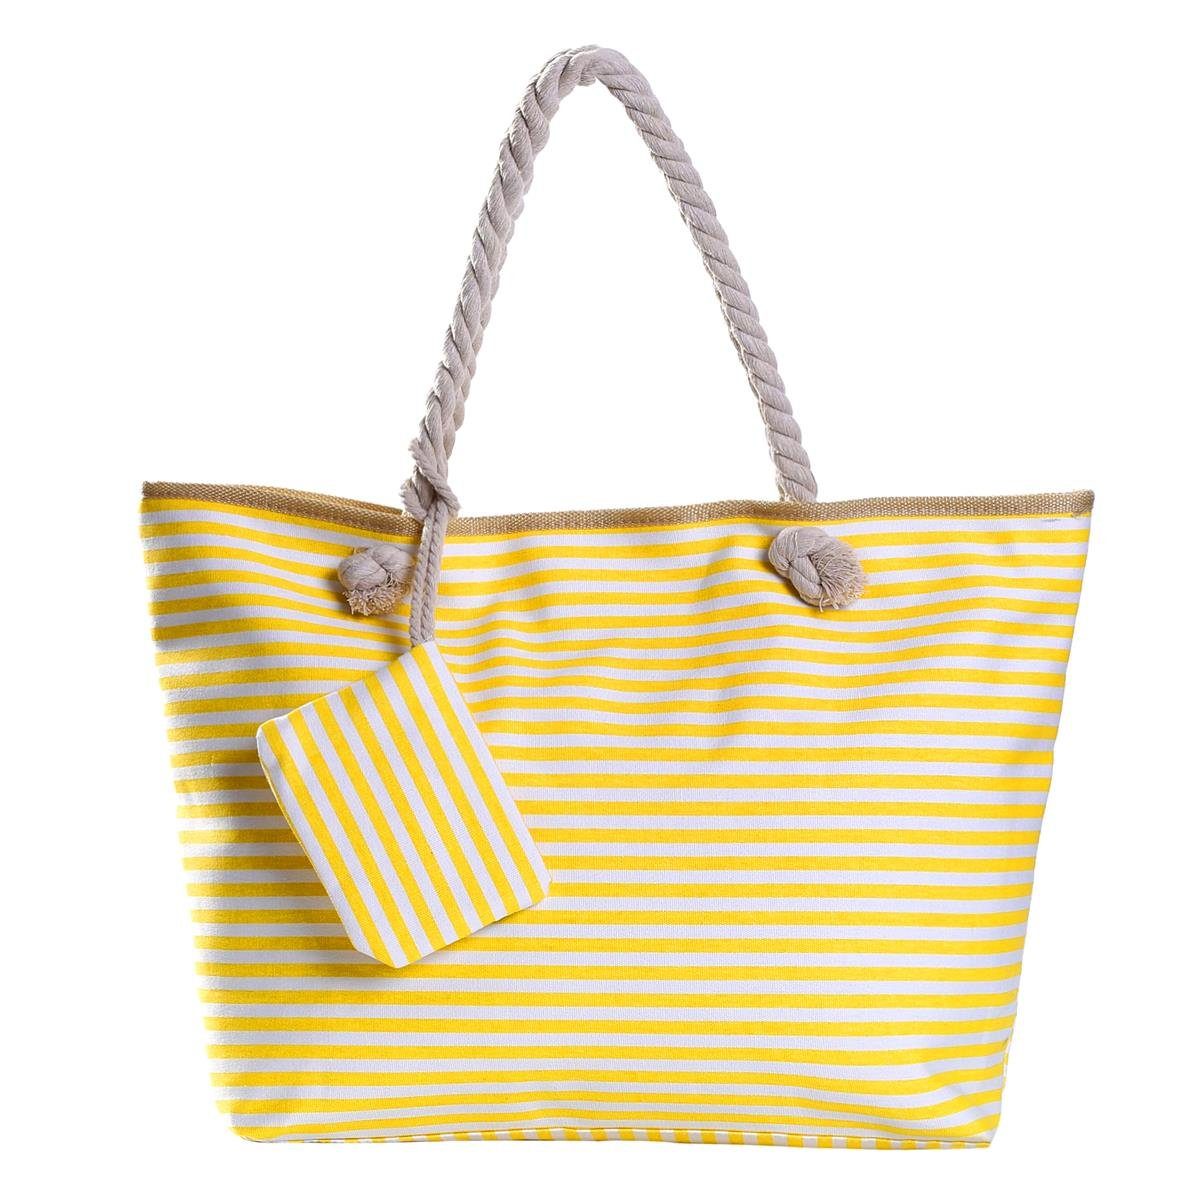 Strandtasche Strandtasche, Große wasserabweisende Tasche mit Reißverschluss, gestreift gelb-weiß DonDon Shopper (2-tlg), 1 Beutel kleinem inkl.